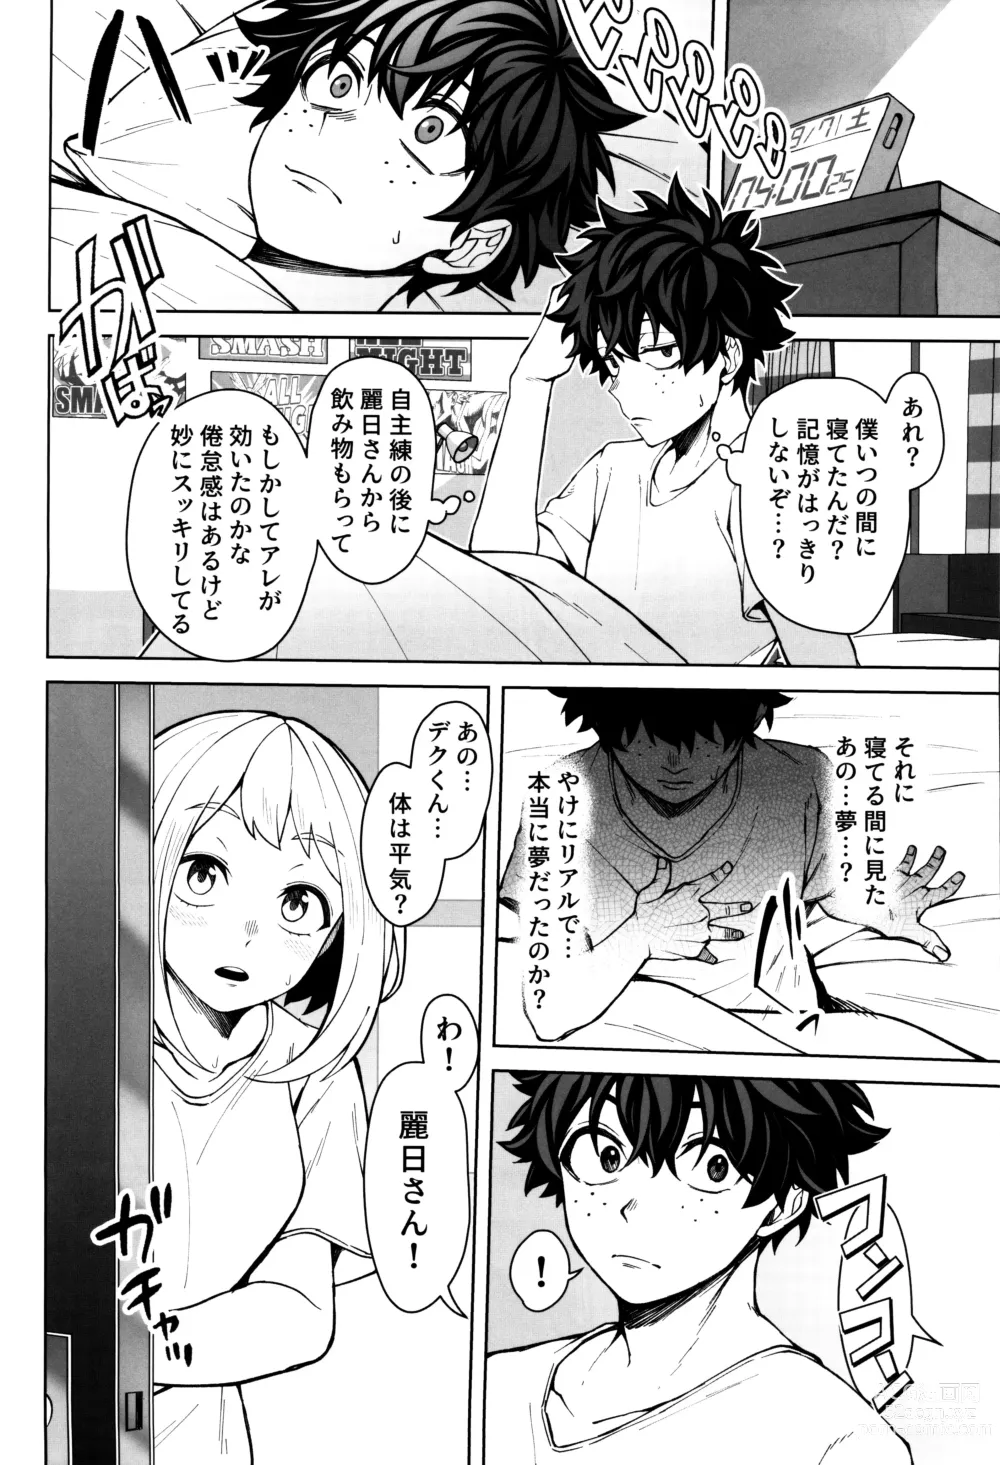 Page 37 of doujinshi Oki o Tashika ni